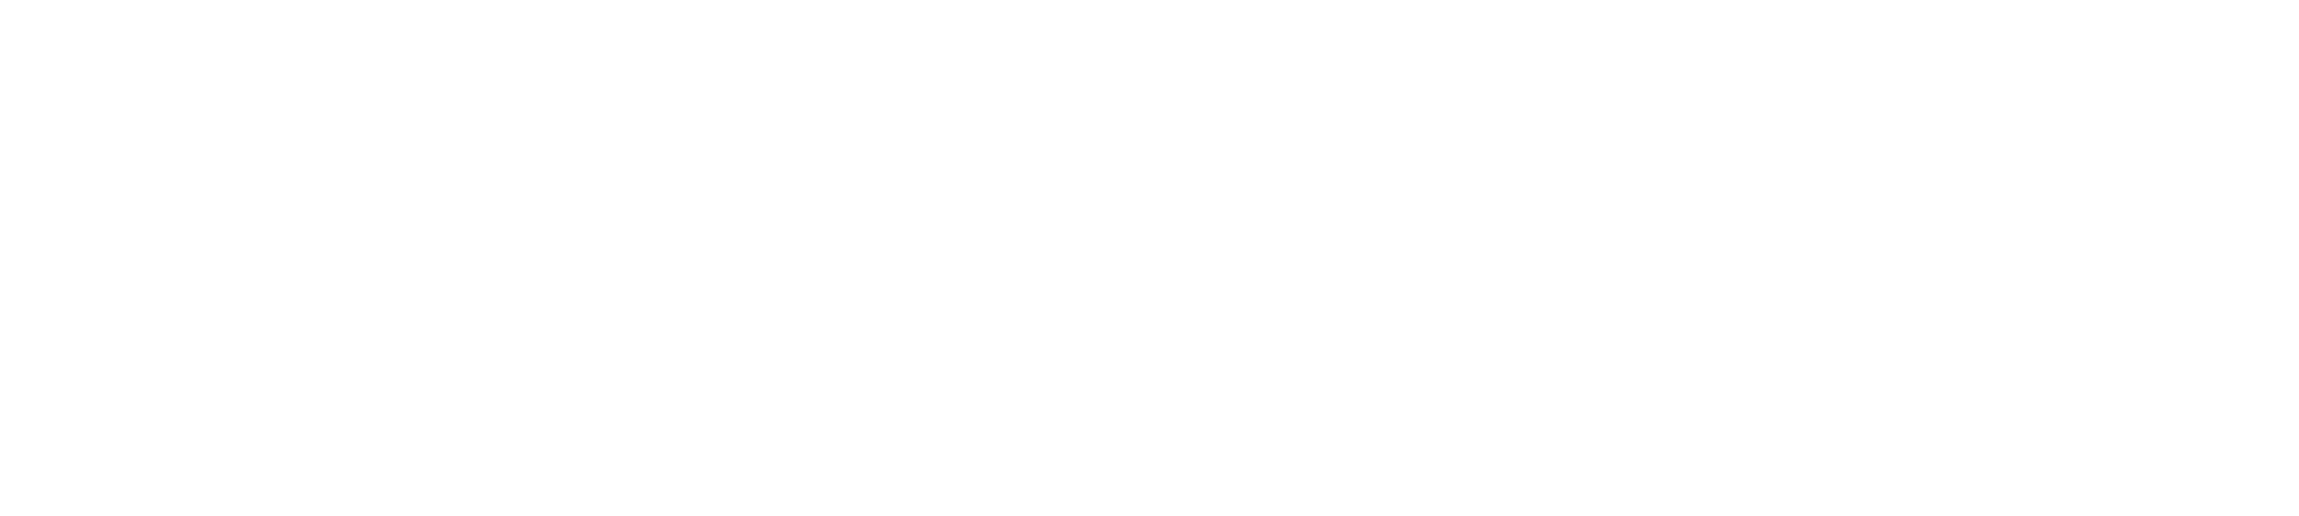 Masterarbeit Ghostwriter Logo